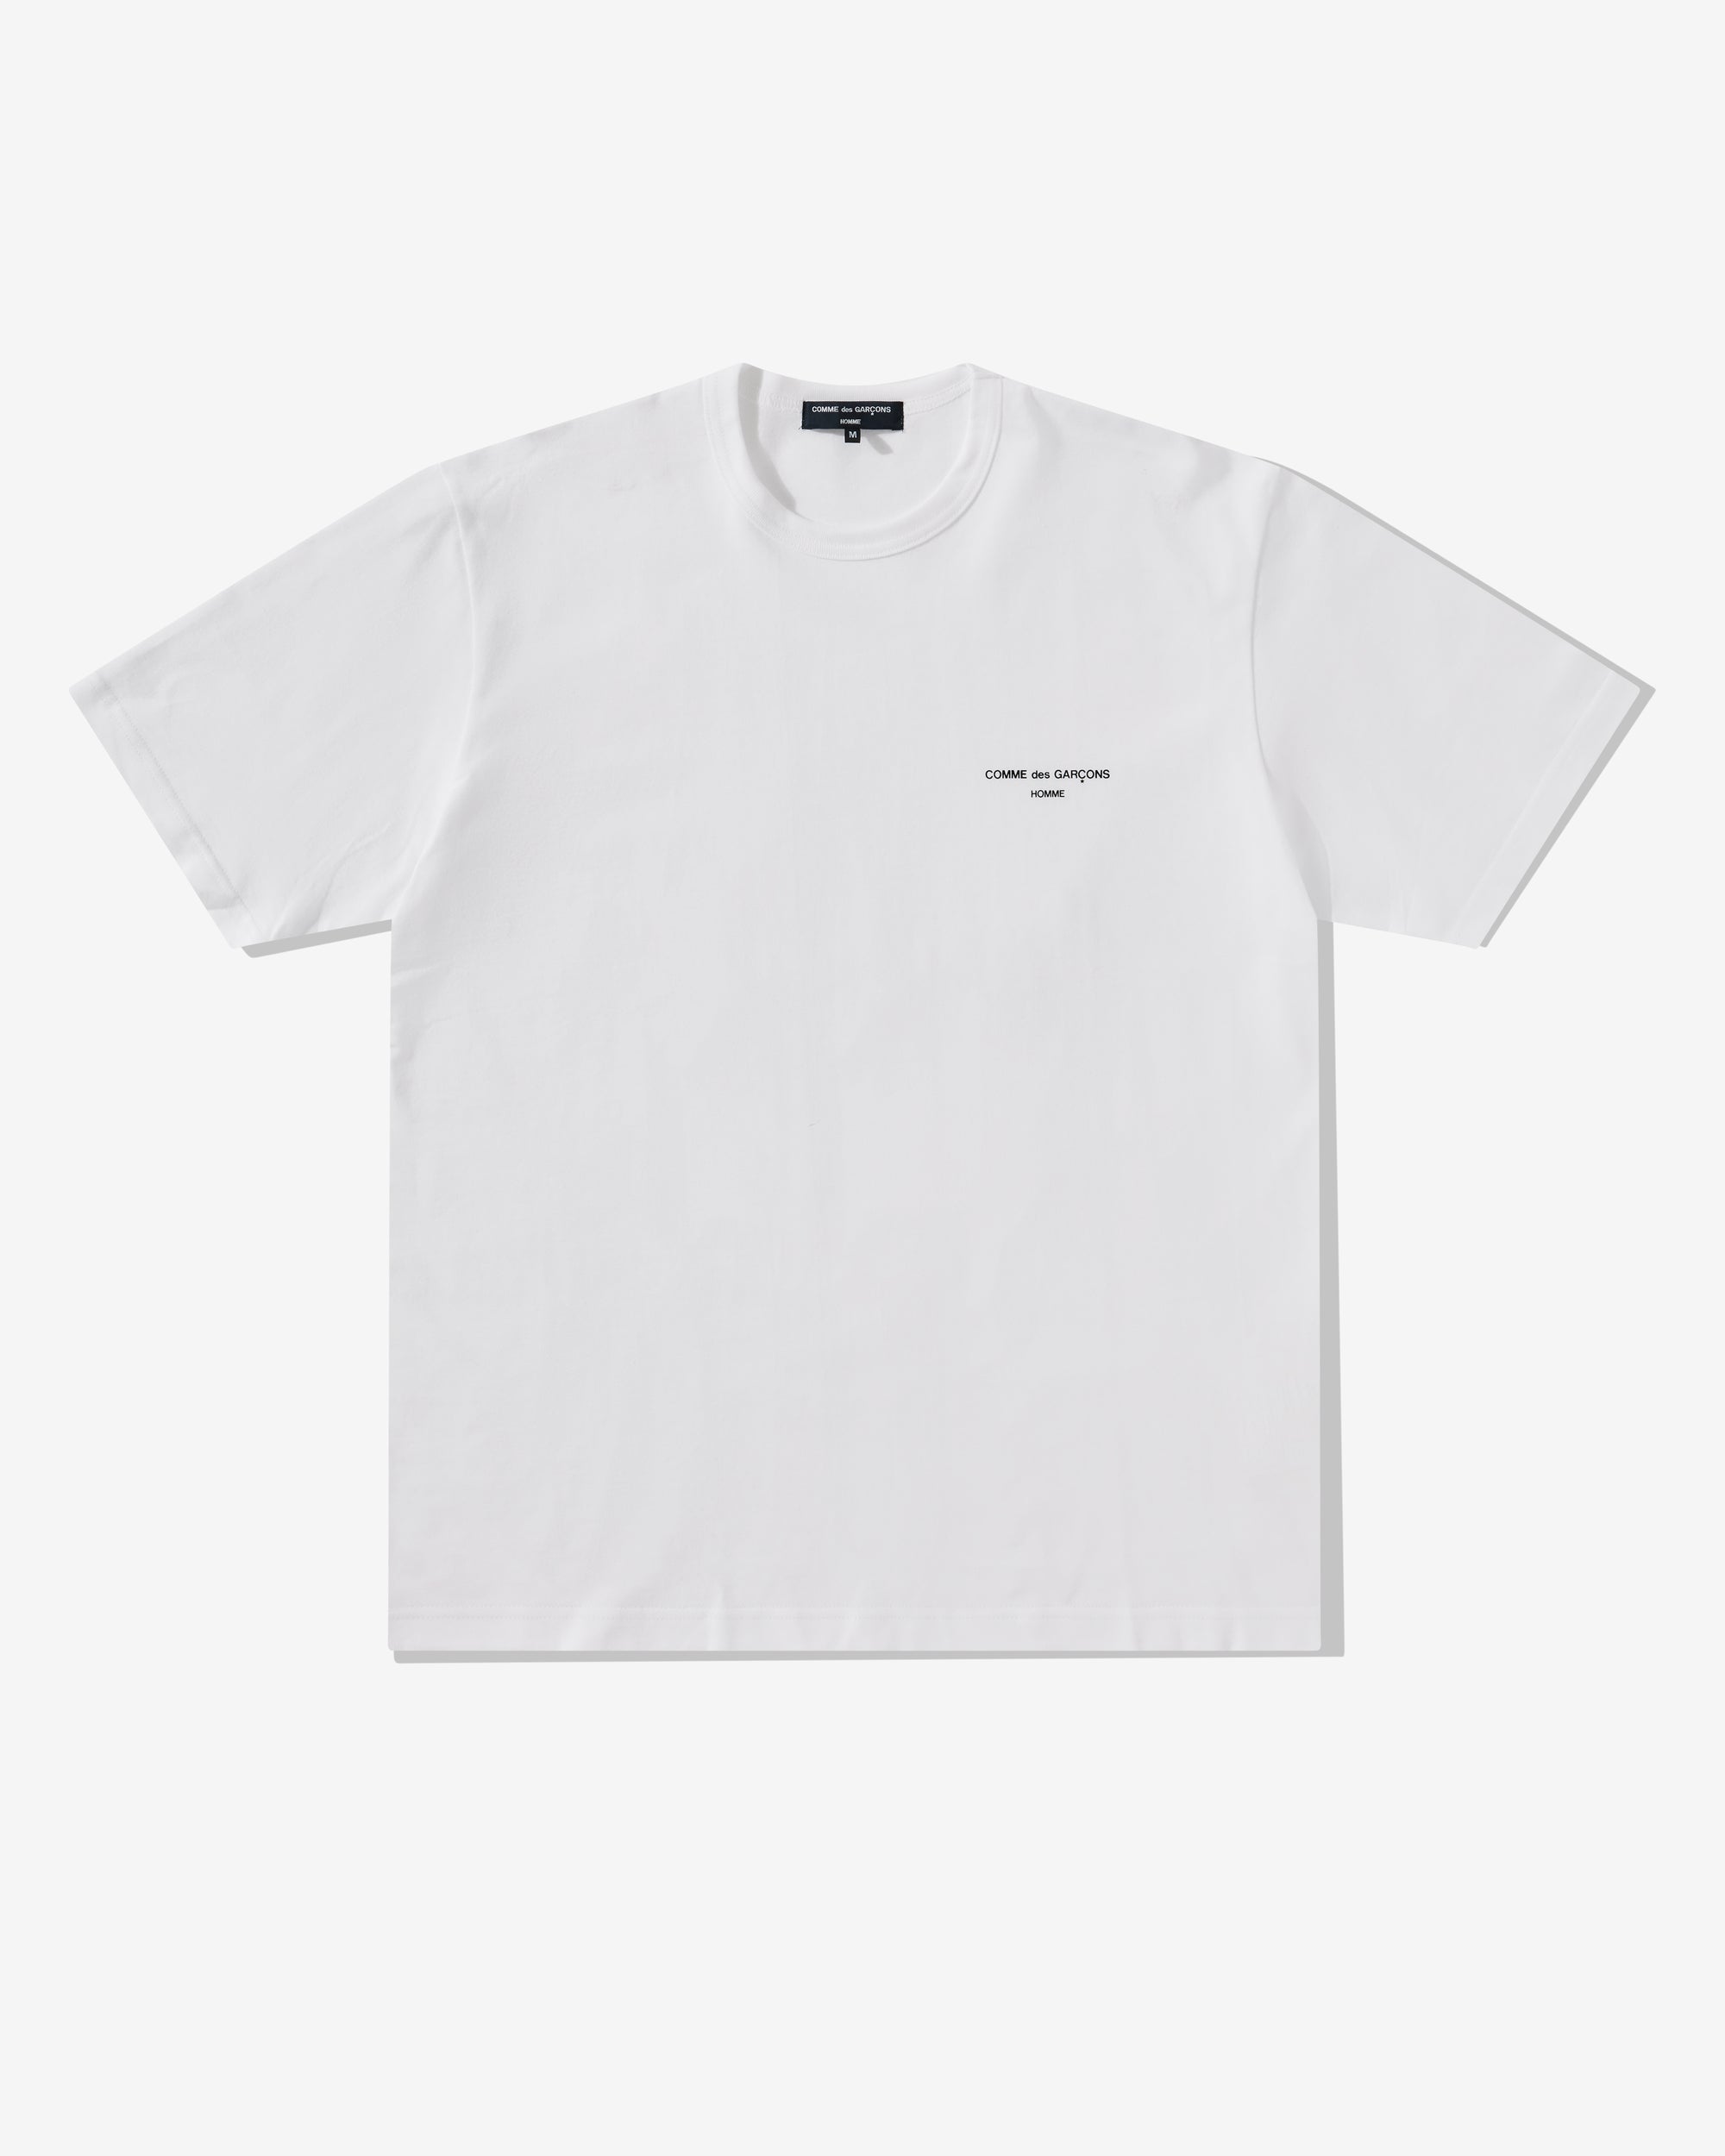 Comme des Garçons Homme - Men's Logo T-Shirt - (White) view 1